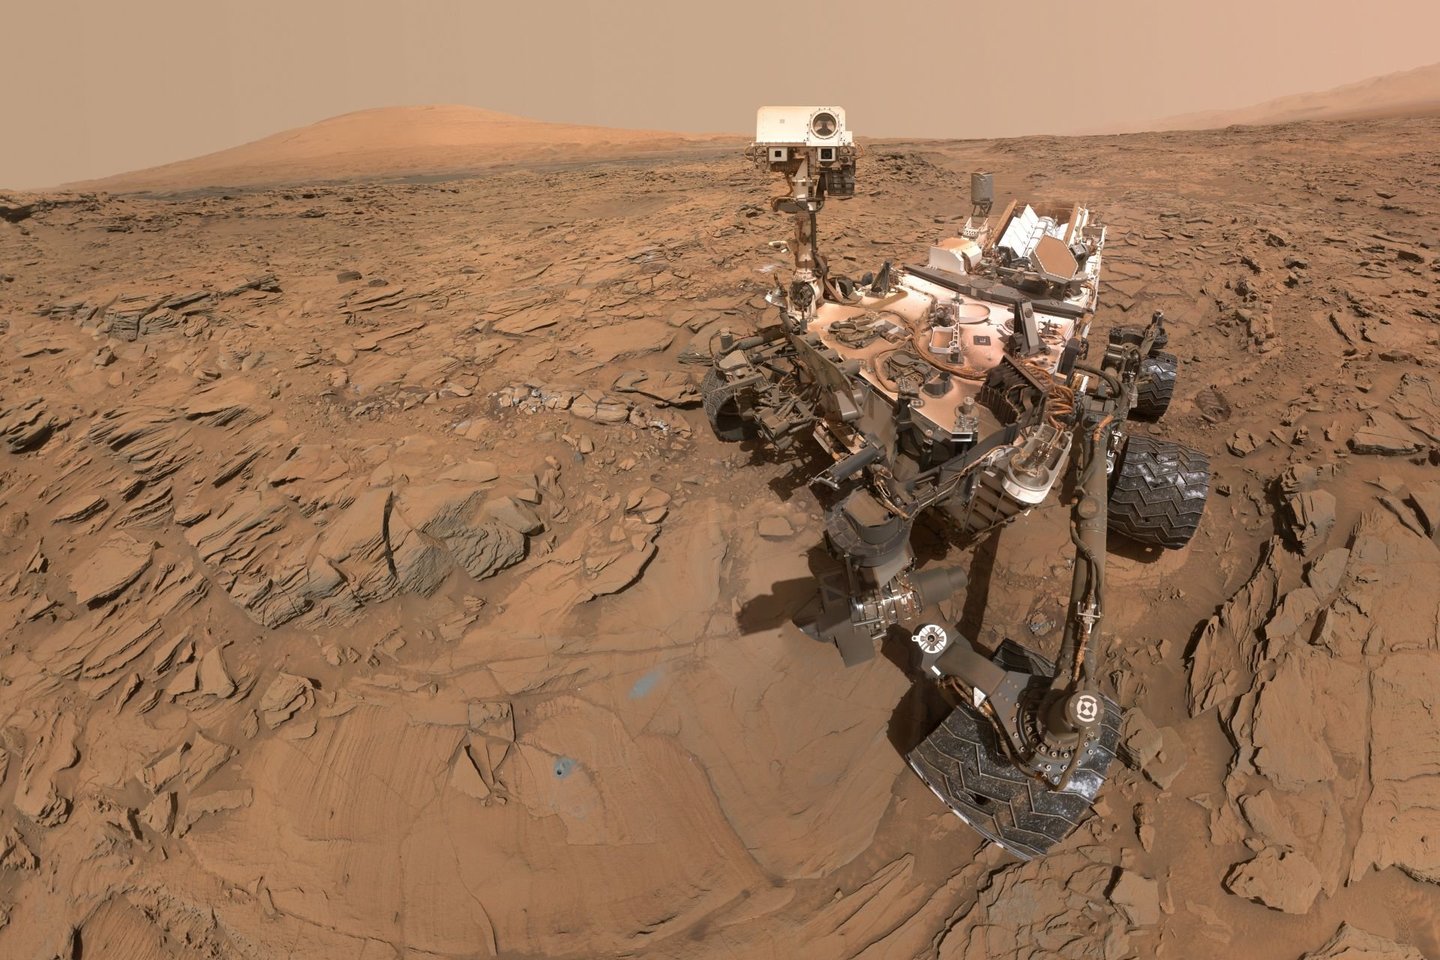  Būtent „Curiosity“ aptiko įvairių molingų uolienų, o molis formuojasi tiktai specifinėmis sąlygomis, kai yra ne per daug šarminio ir rūgštinio vandens.<br> NASA nuotr.